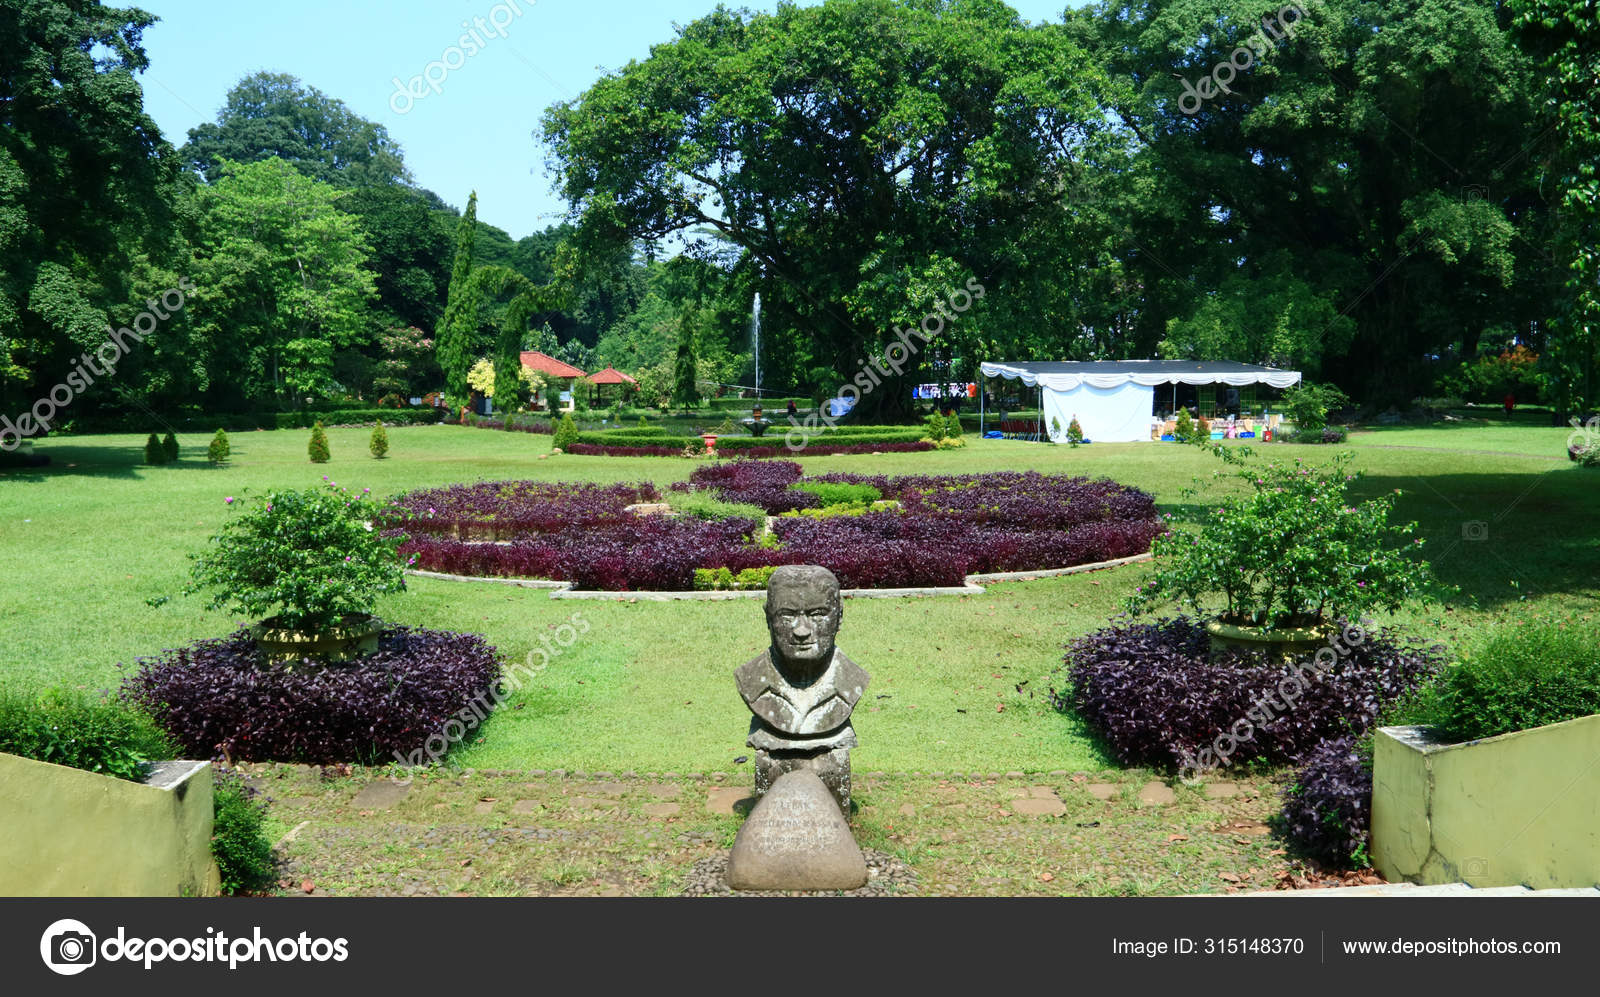 79 Bogor Botanical Gardens Stock Photos Free Royalty Free Bogor Botanical Gardens Images Depositphotos